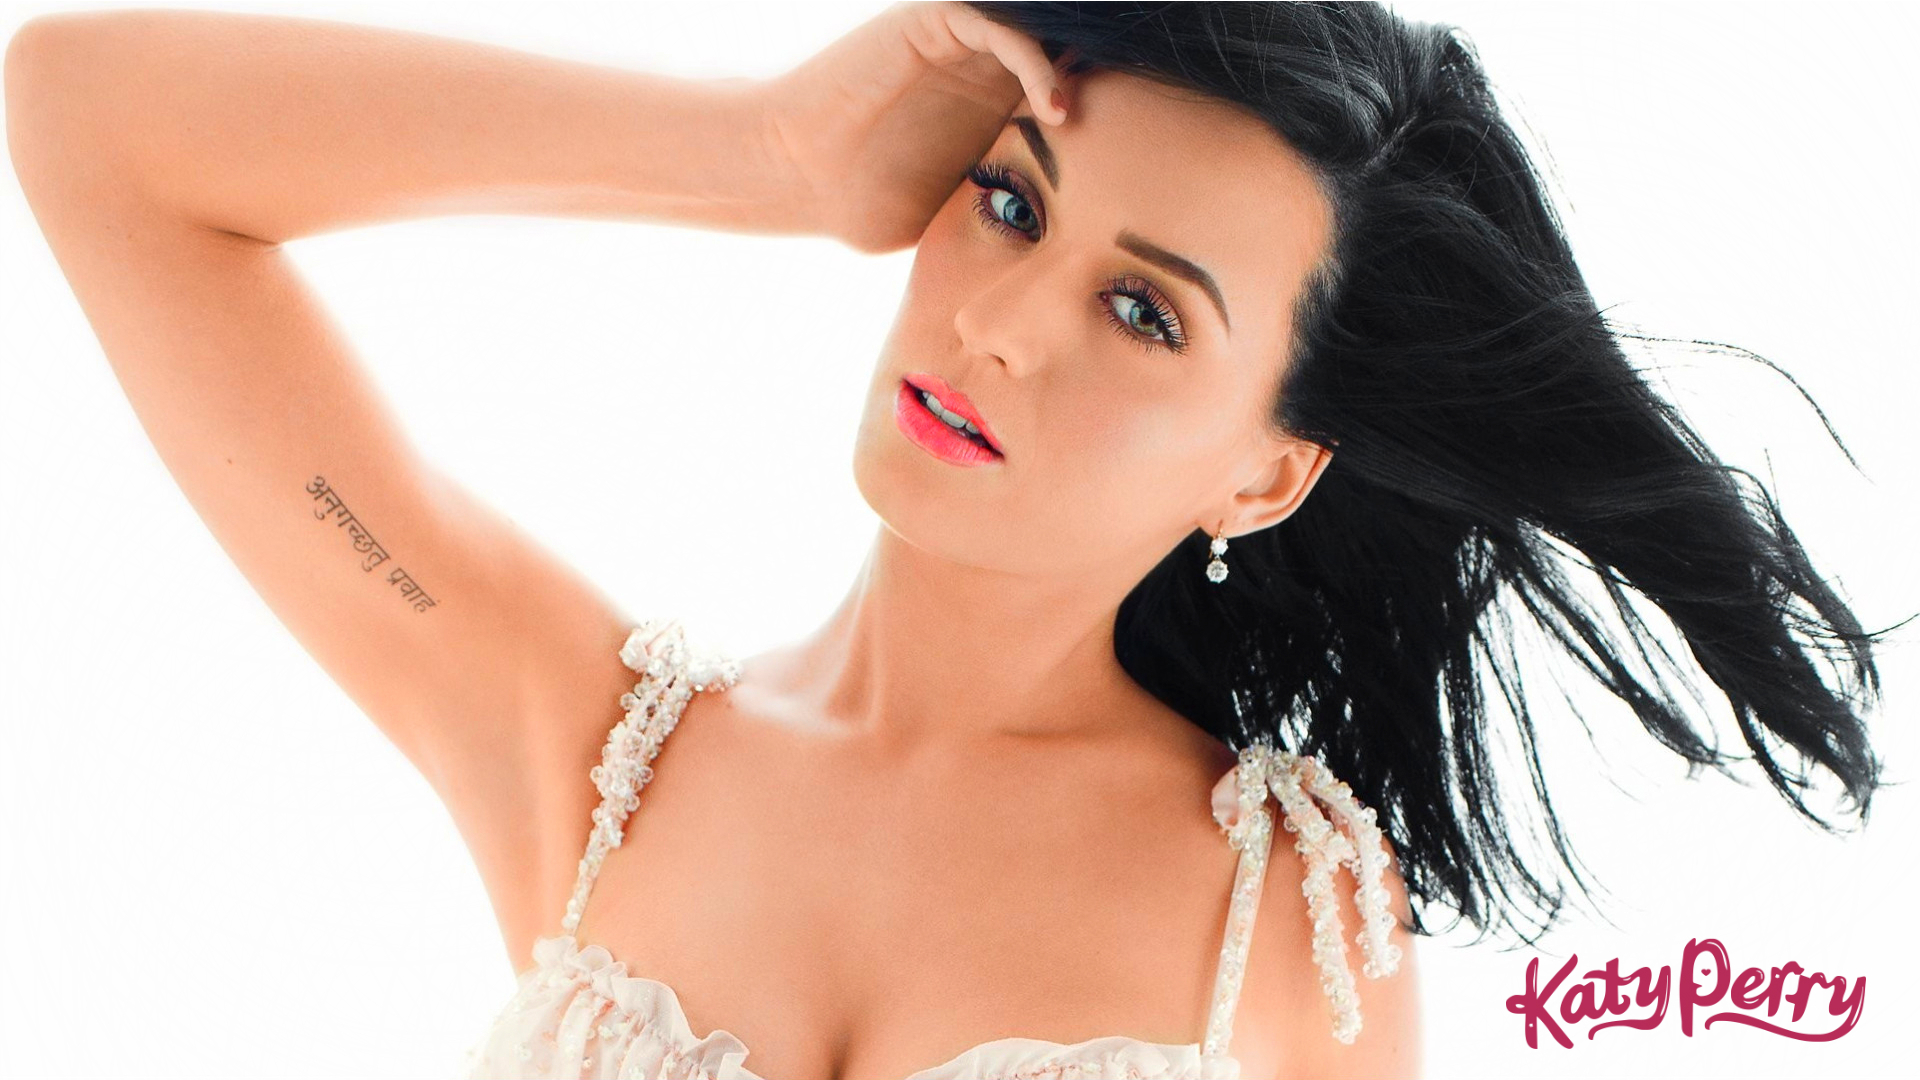 Katy Perry HD Wallpaper Imagebank Biz